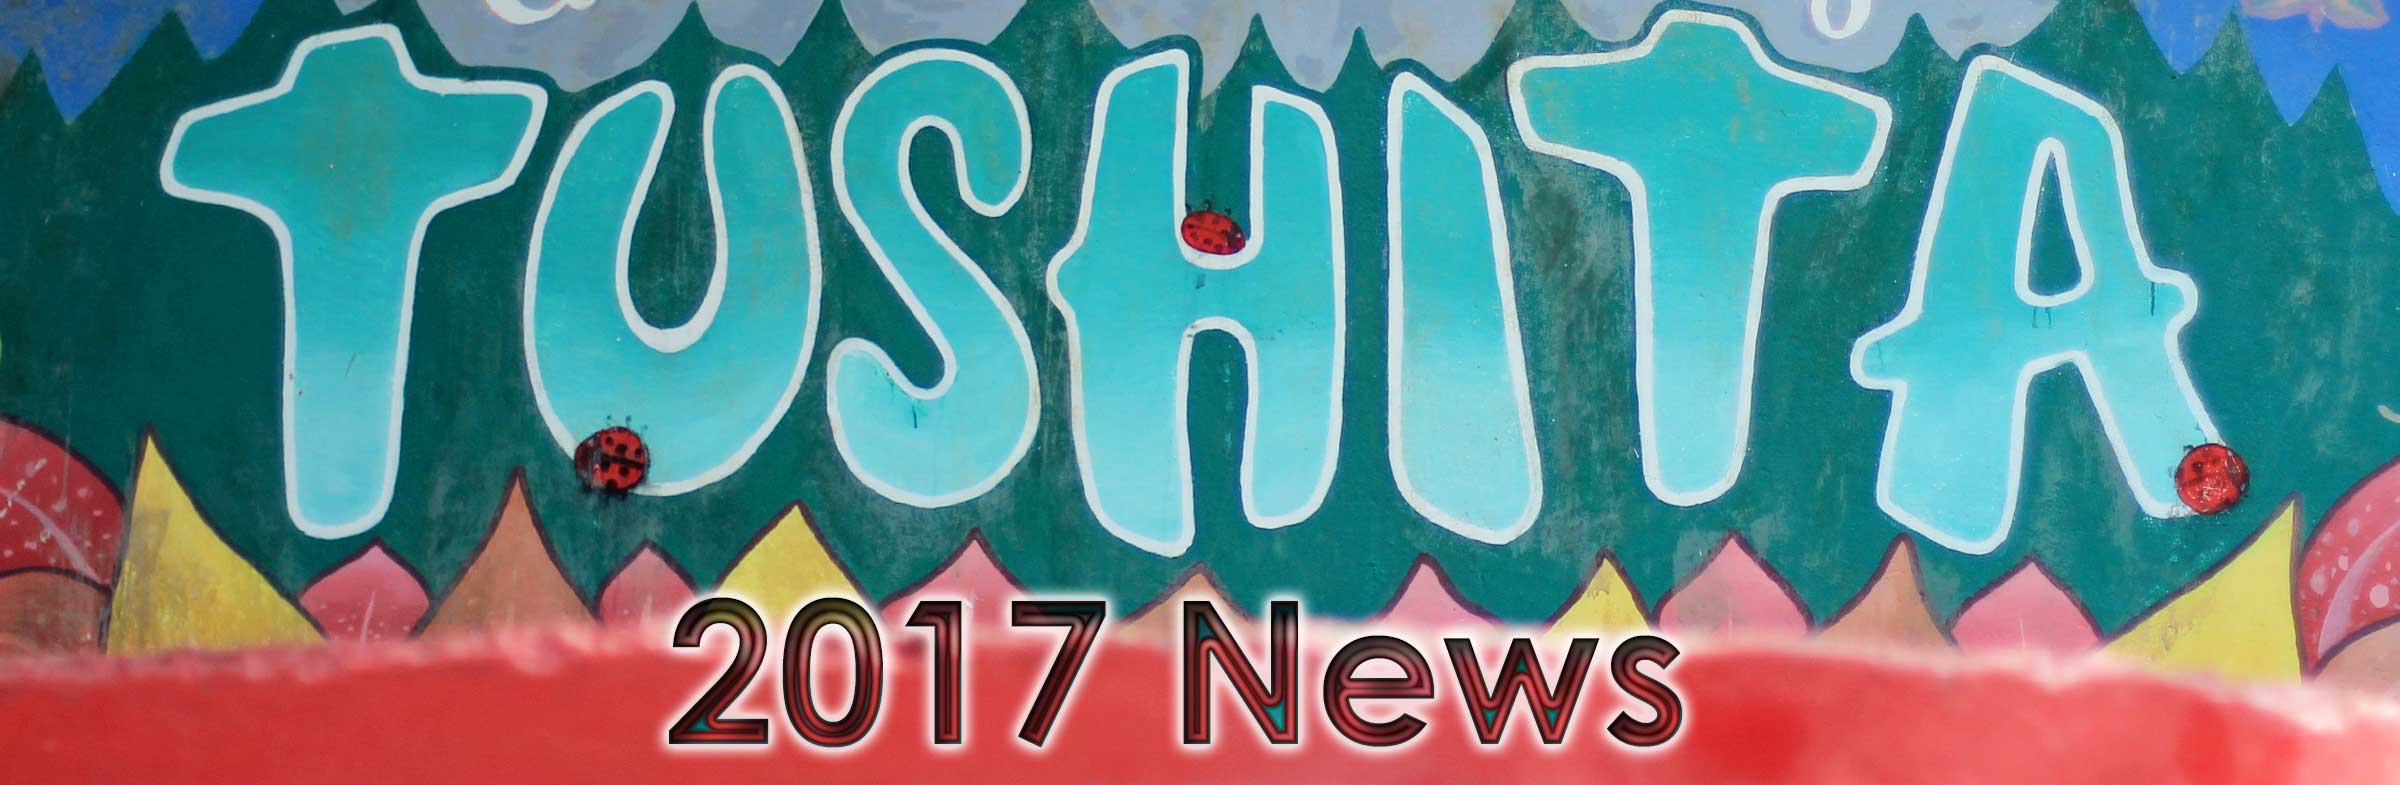 Tushita News 2017